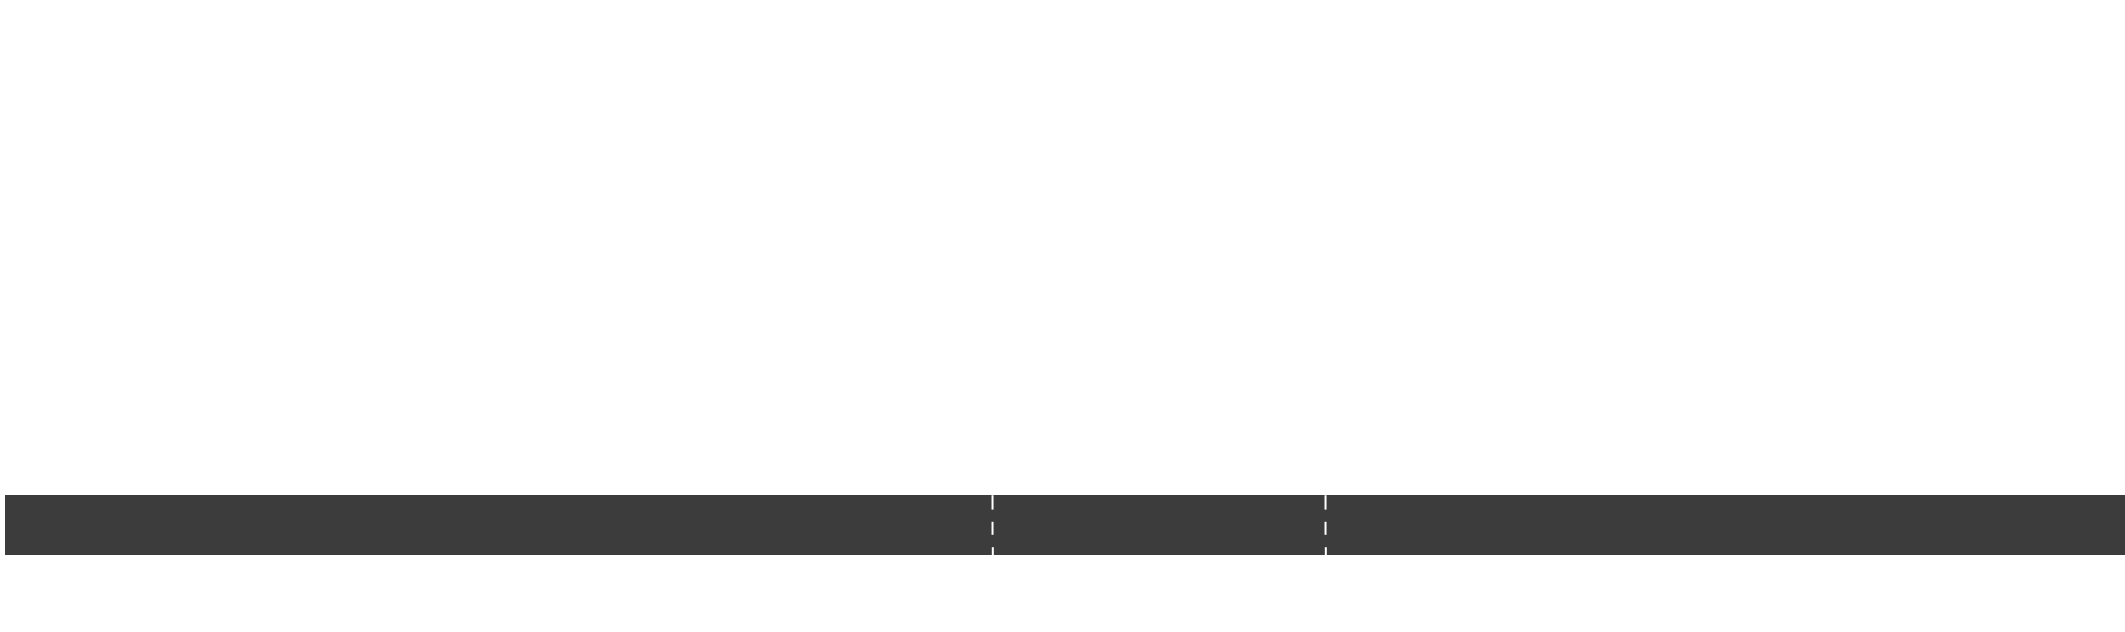 Horizontal Blinds Diagram